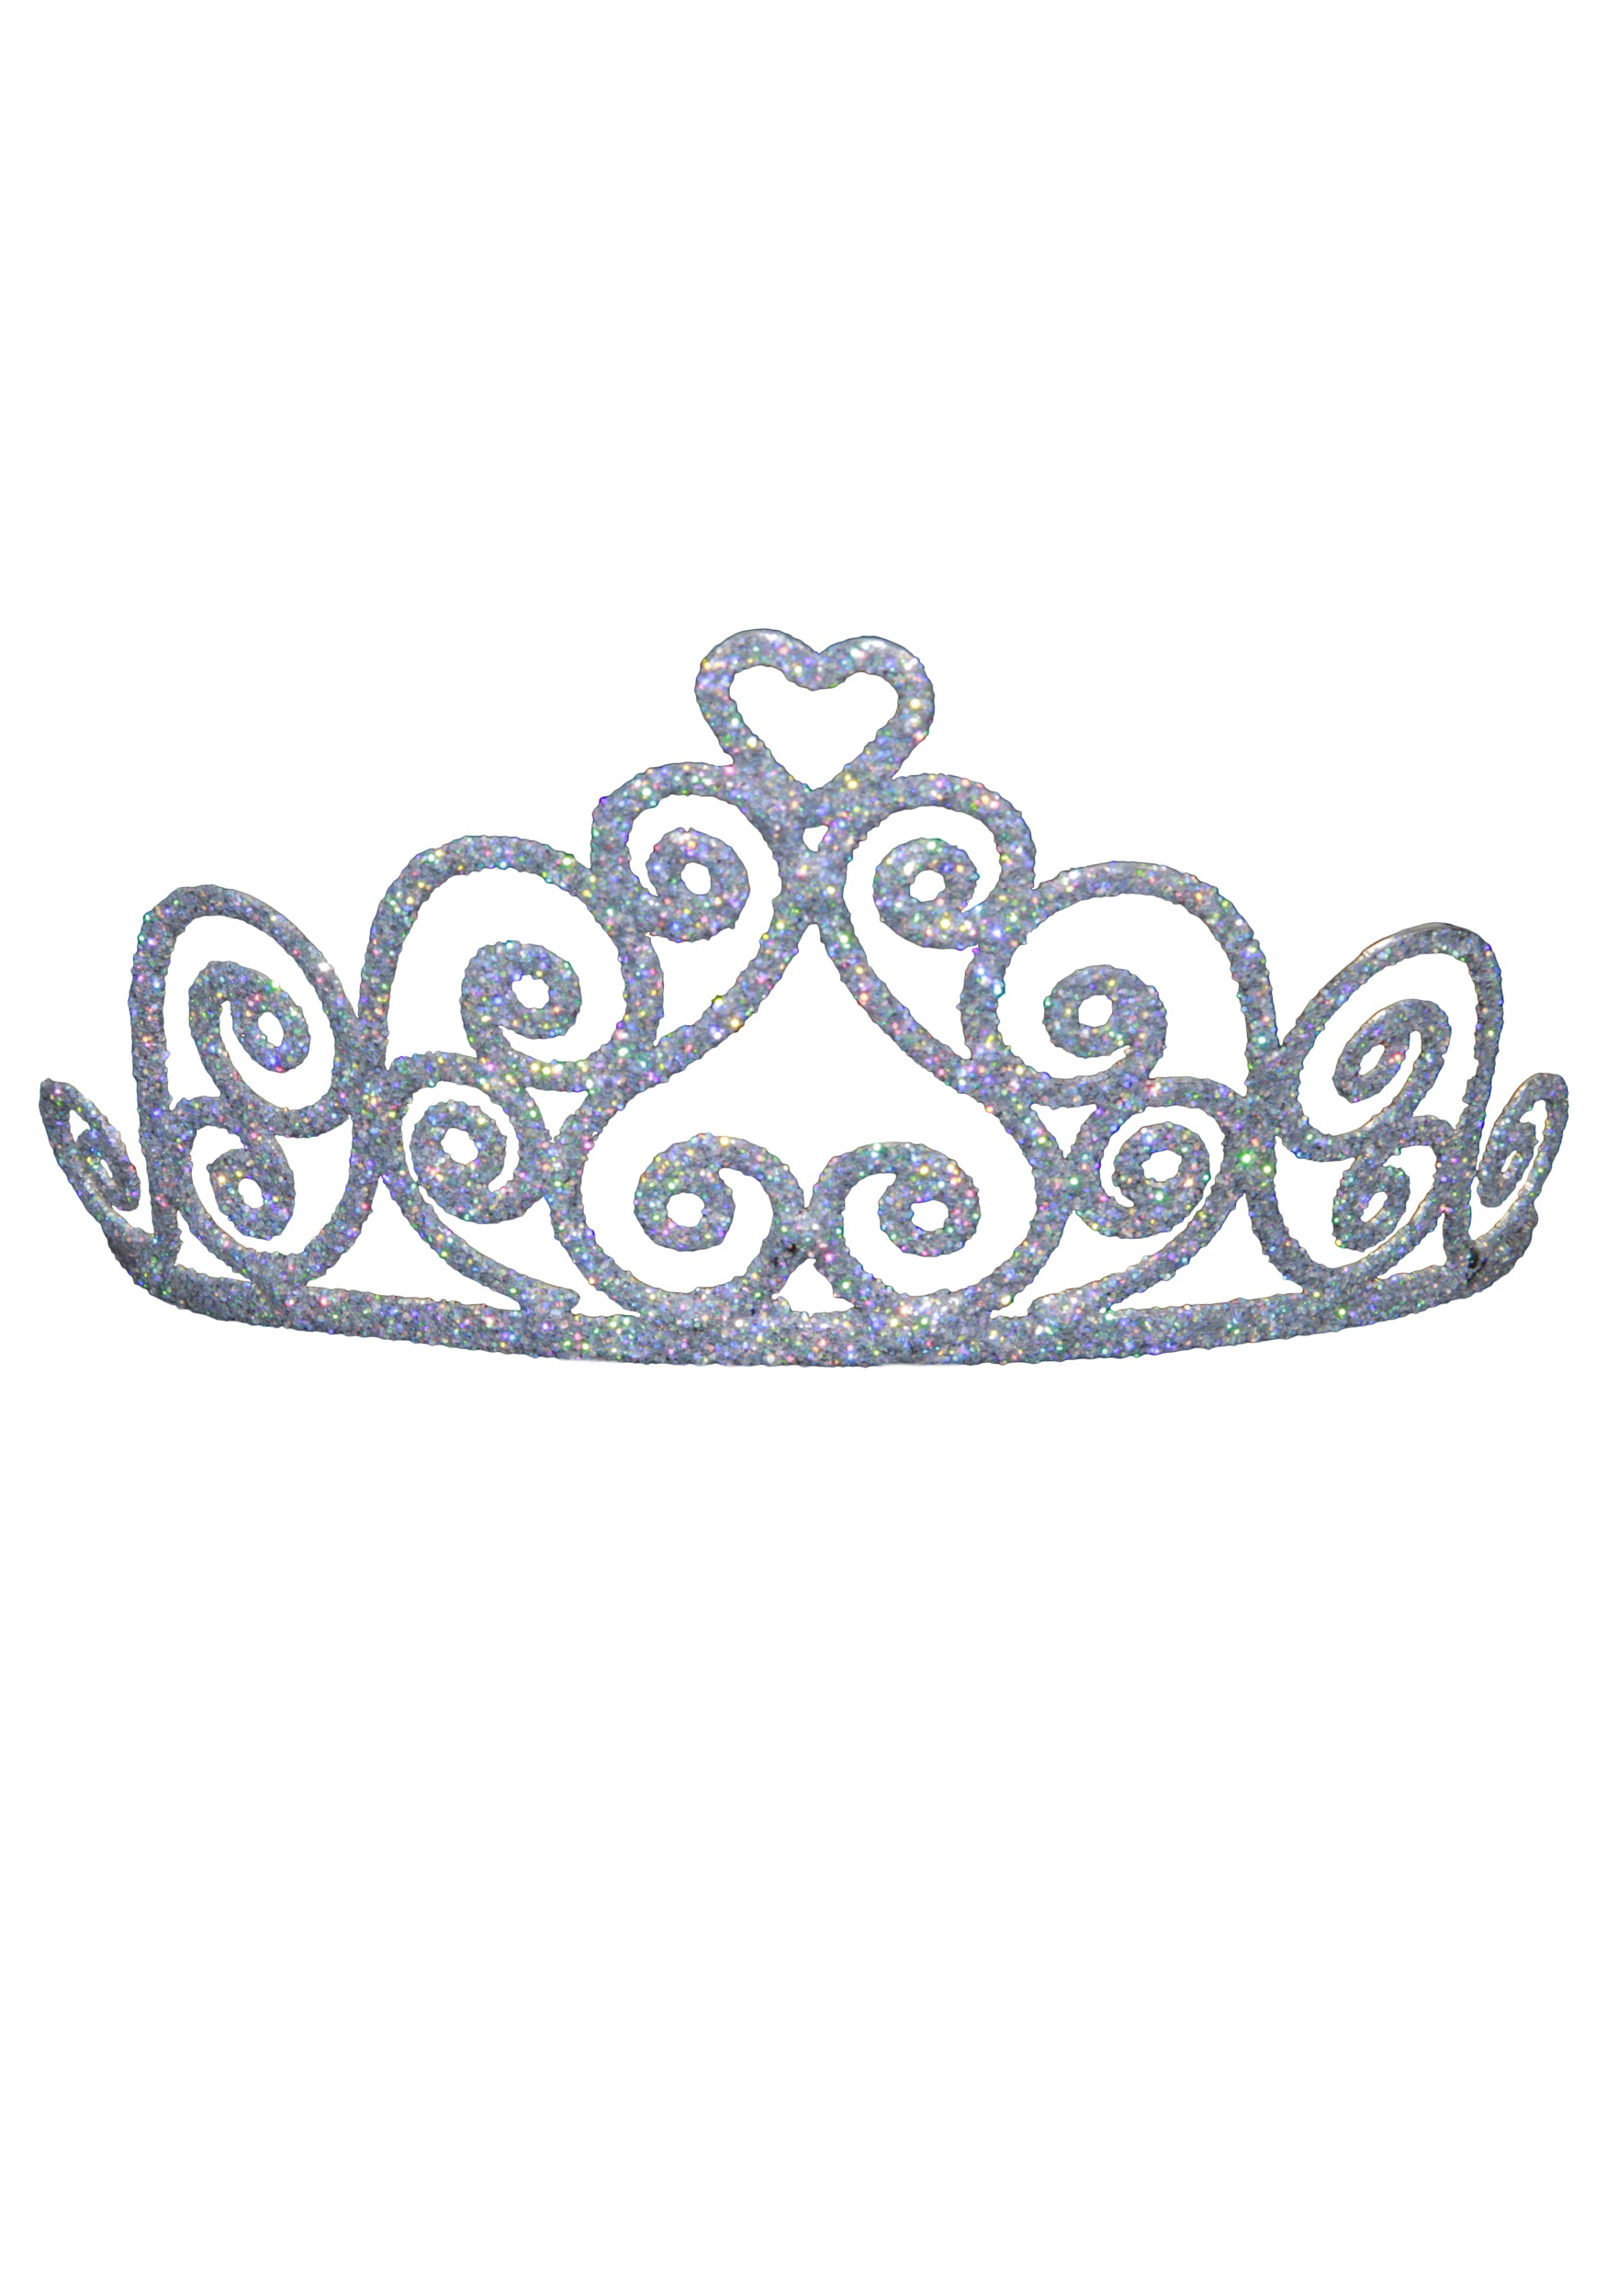 Tiara queen crown clipart bla